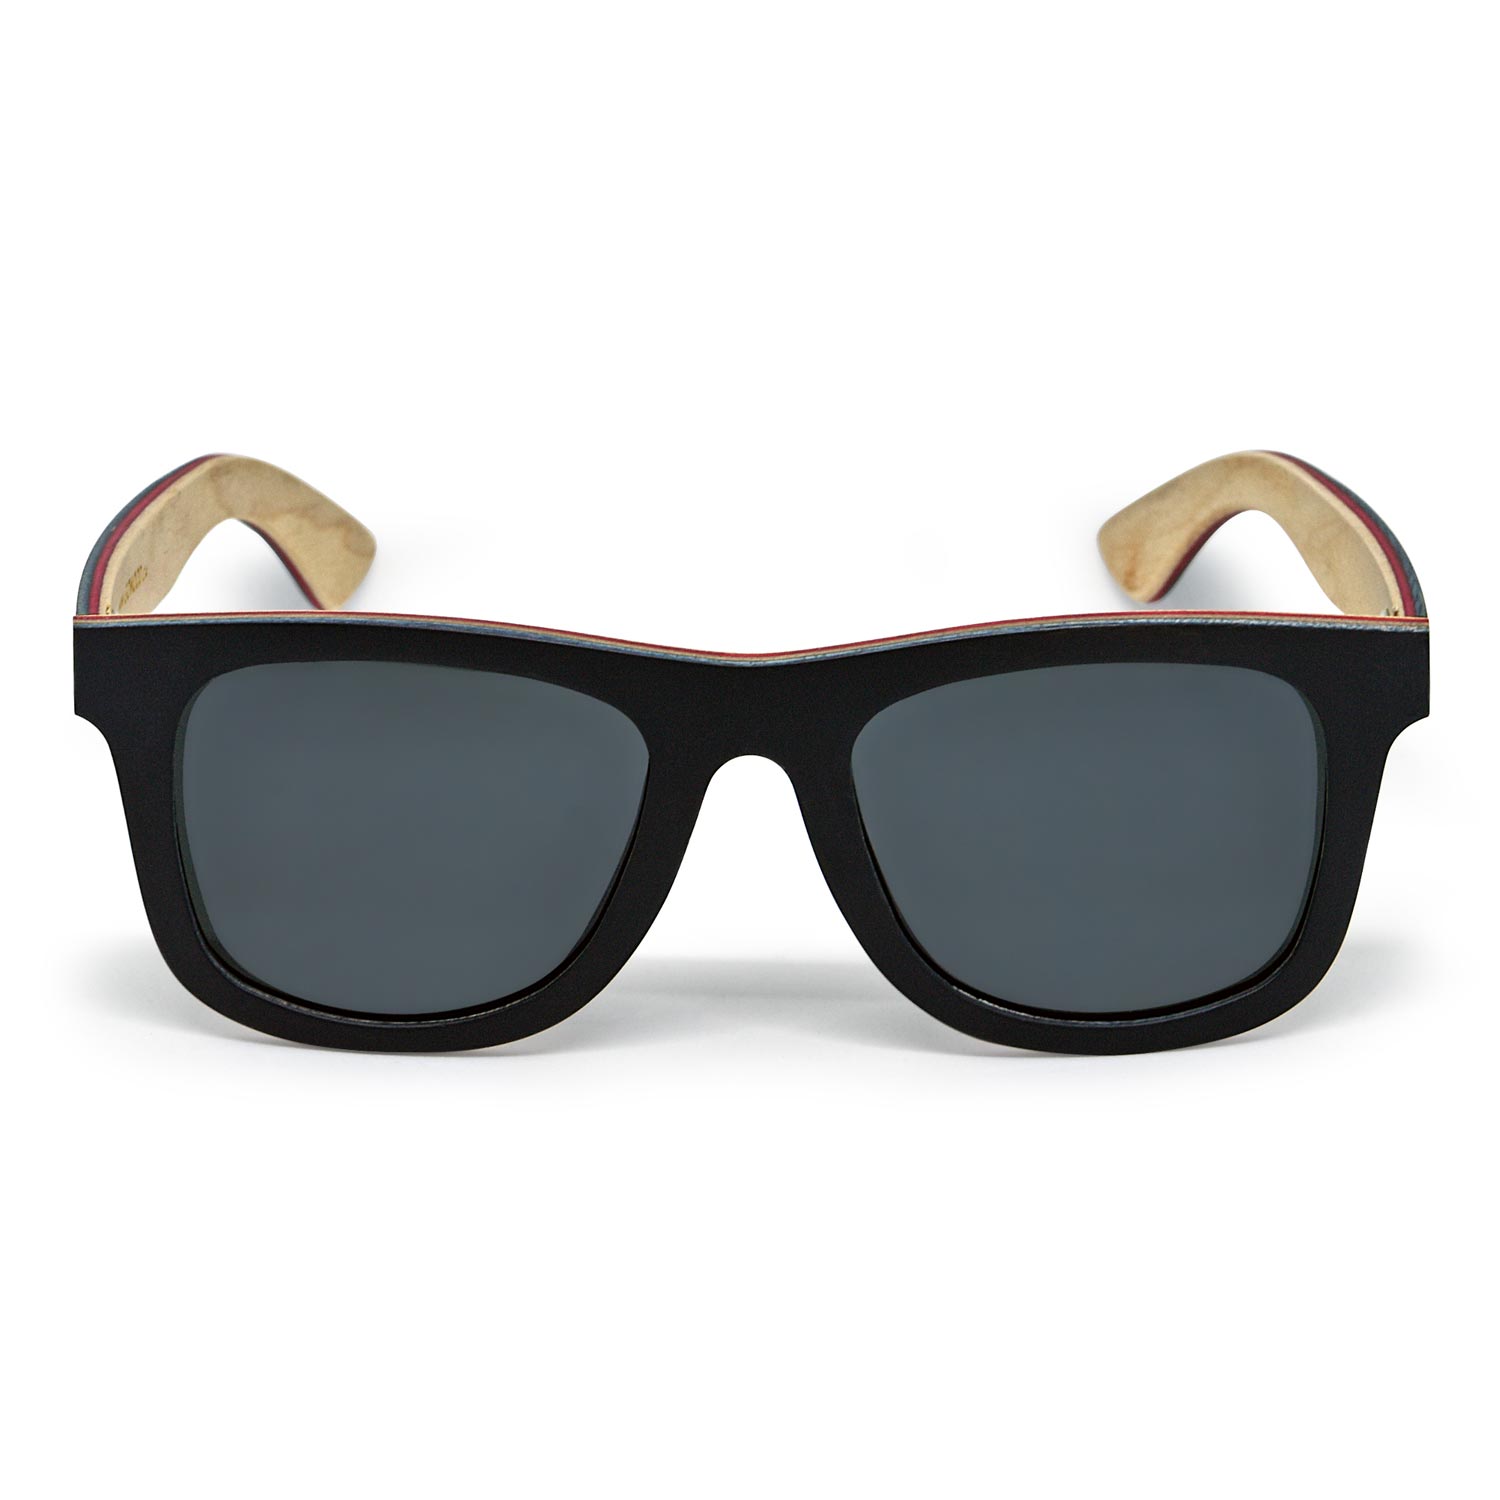 Black maple wood sunglasses